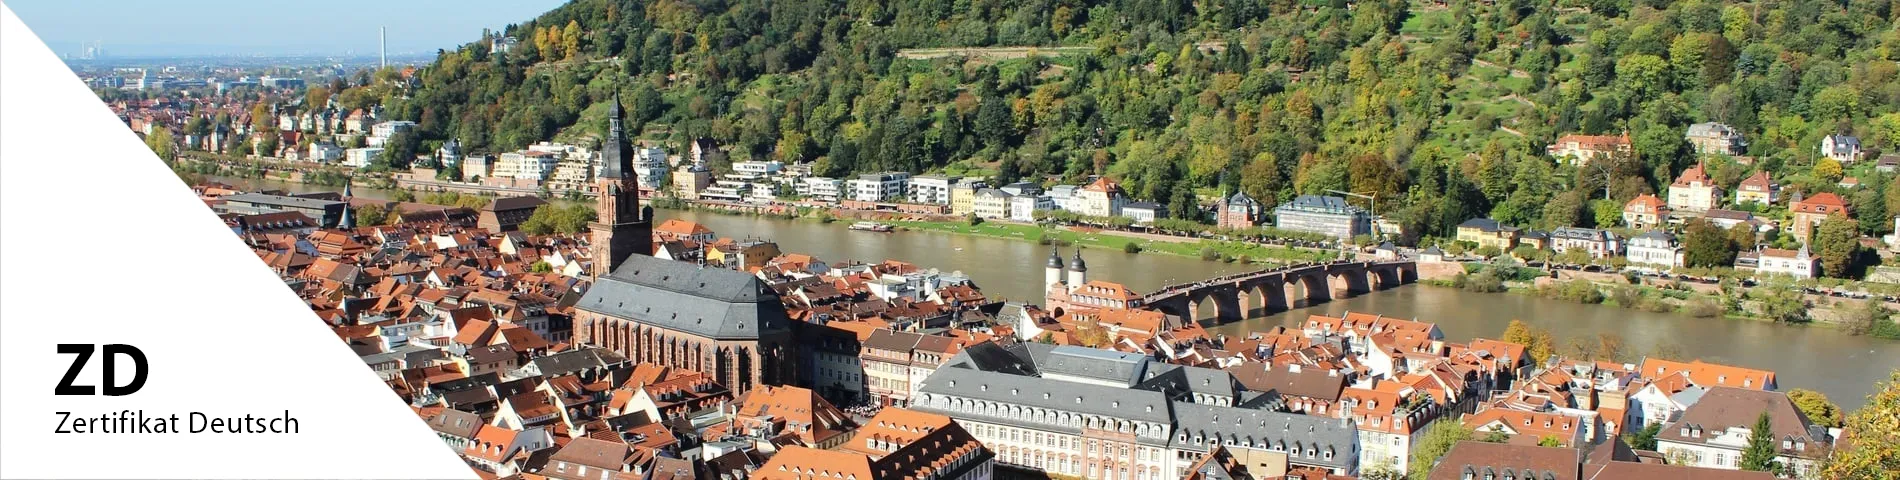 Heidelberg - Zertifikat Deutsch